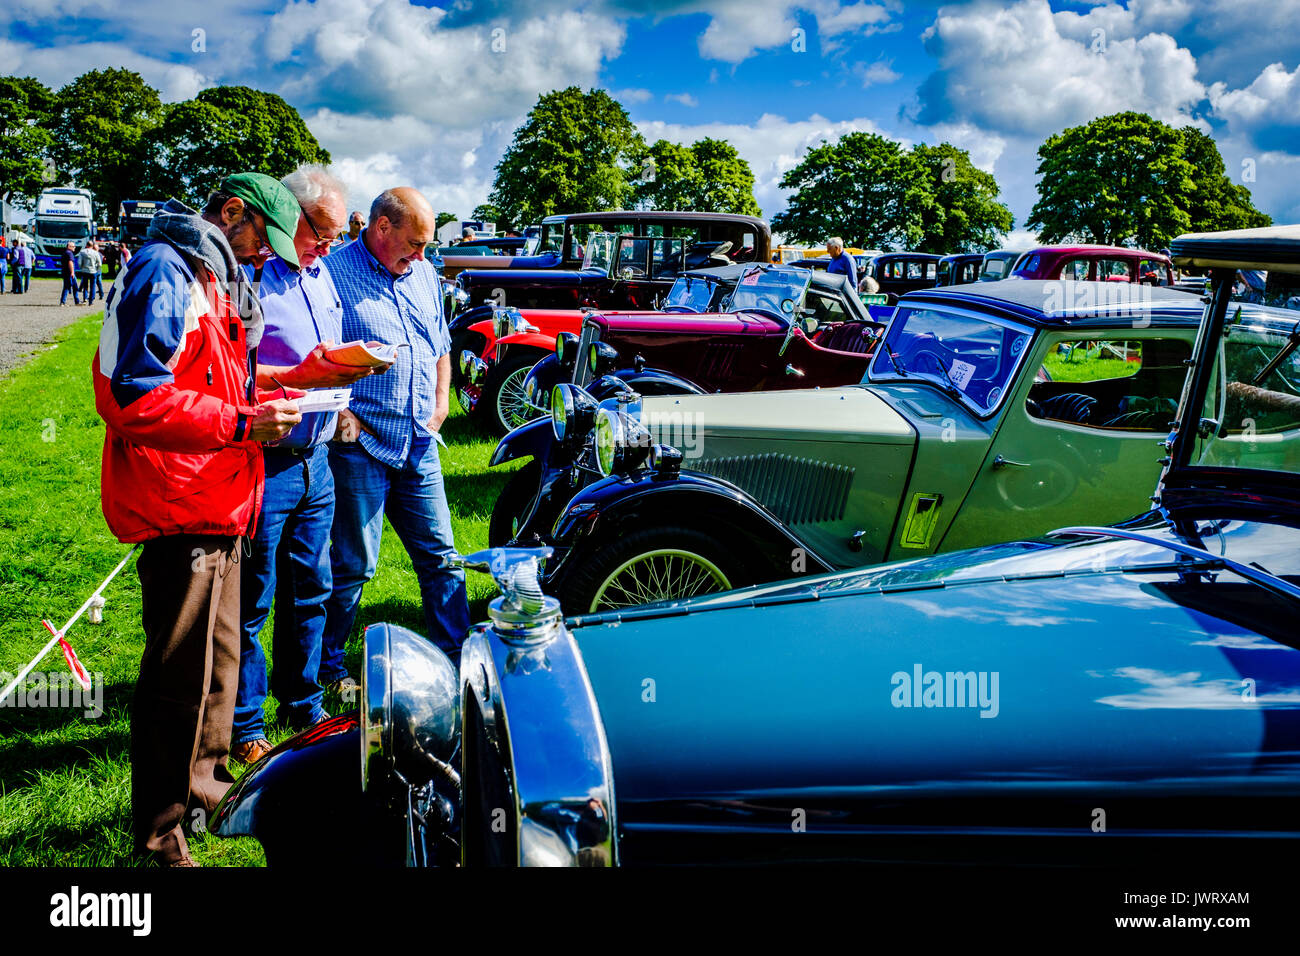 Biggar, South Lanarkshire - 44e rallye de véhicules anciens. Trois hommes admirer les voitures classiques. Banque D'Images